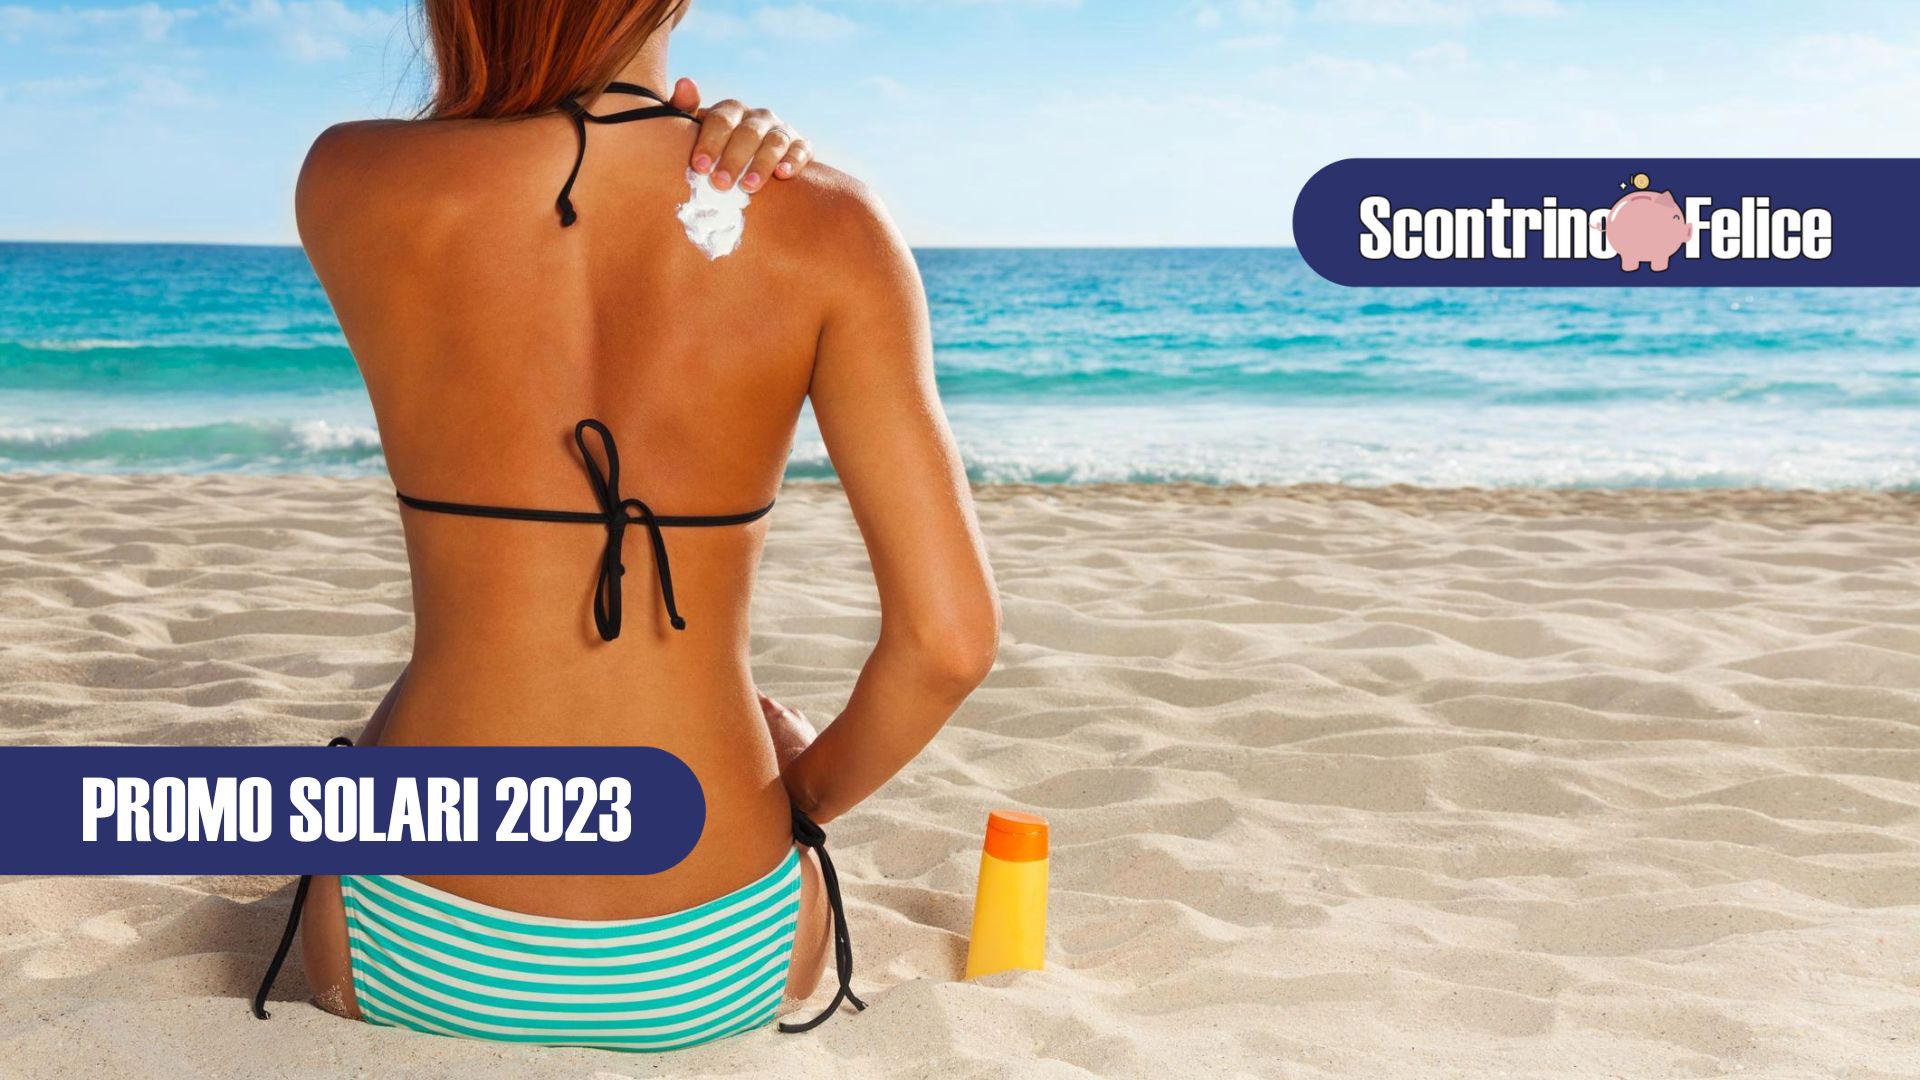 Promo Solari 2023 scopri concorsi e iniziative alle quali partecipare per risparmiare!